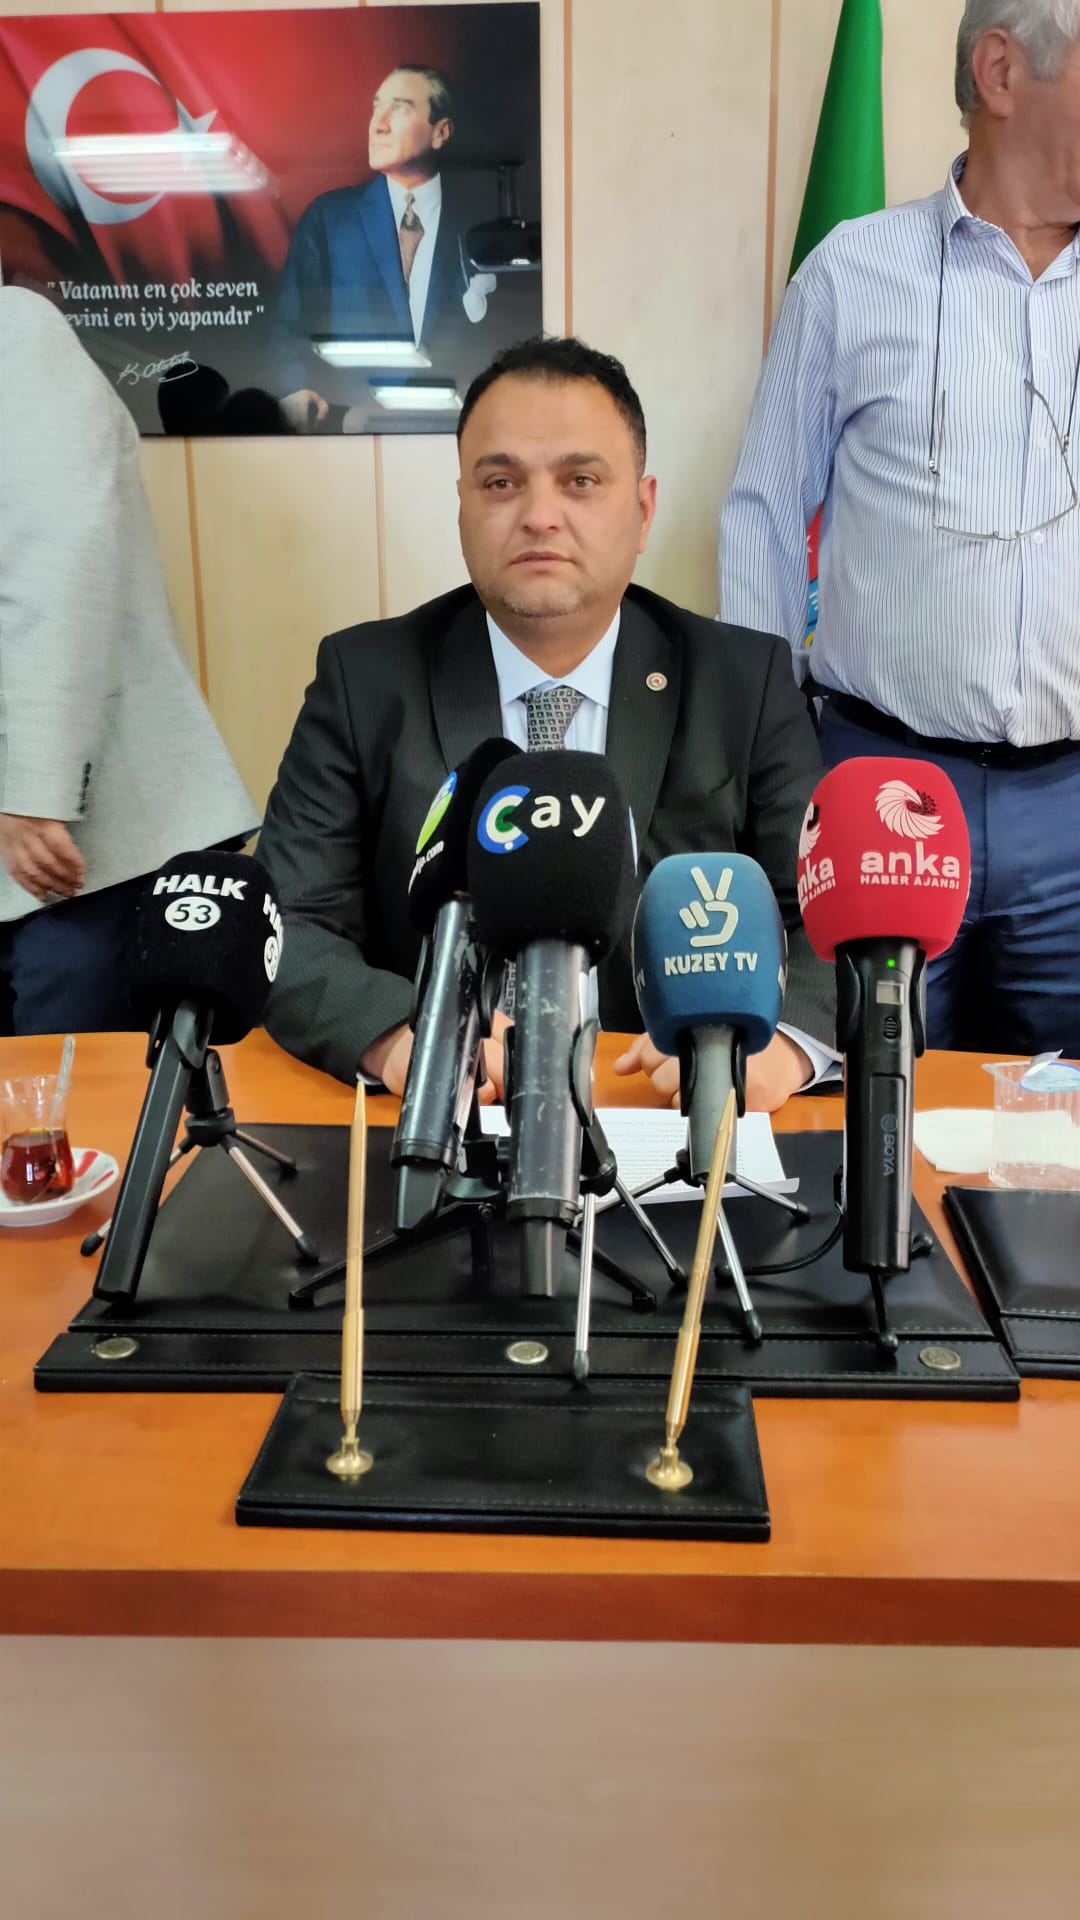 Rize - Artvin - Trabzon Ziraat Oda Başkanları Toplandı , Ortak Bildiri yayınlandı 